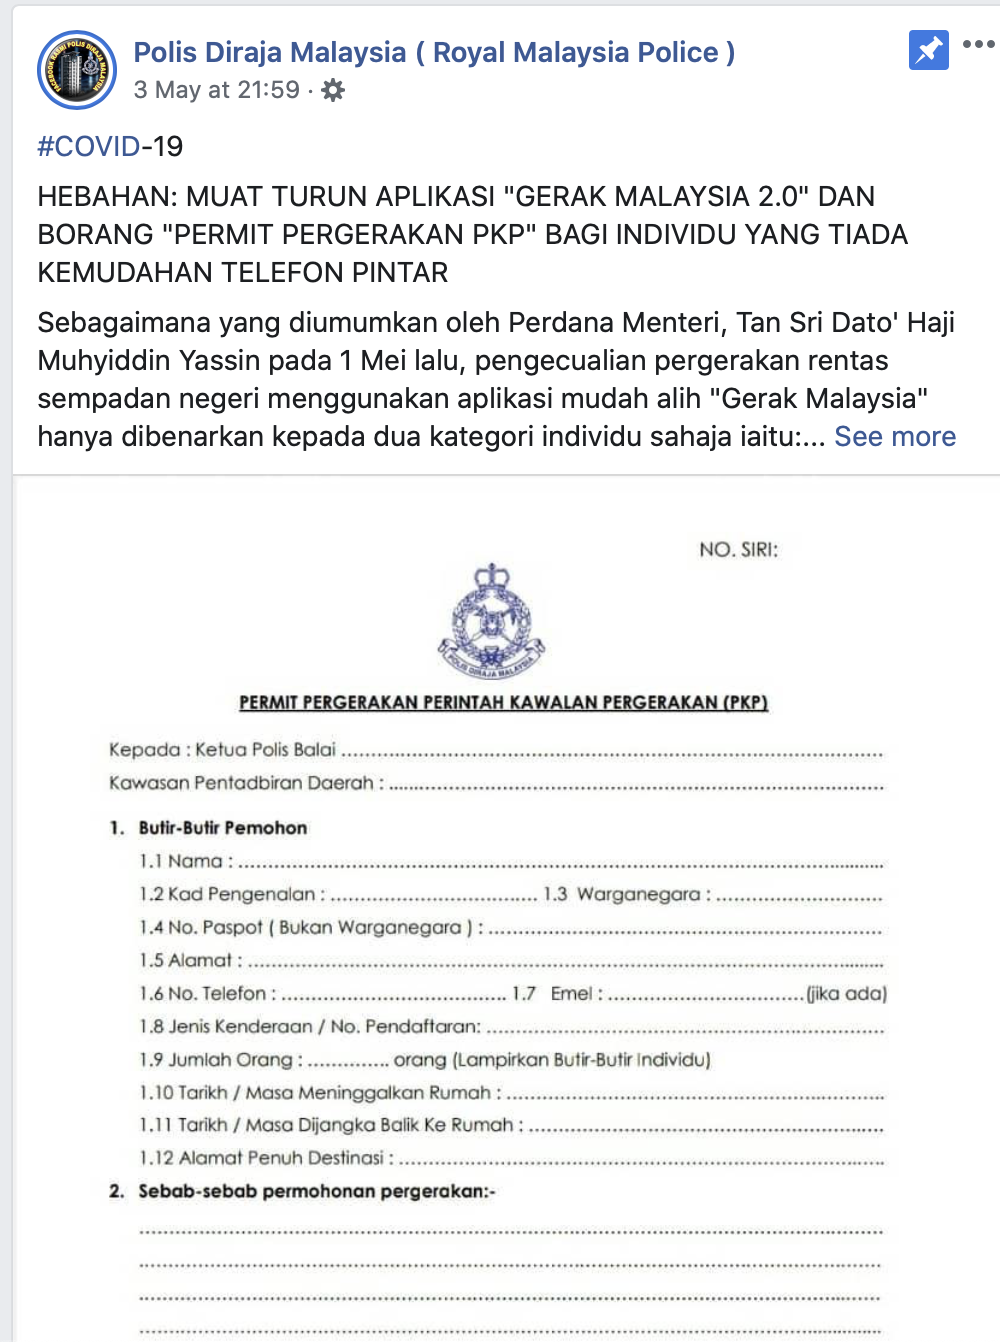 Pergerakan pdf download pkp permit Muat Turun